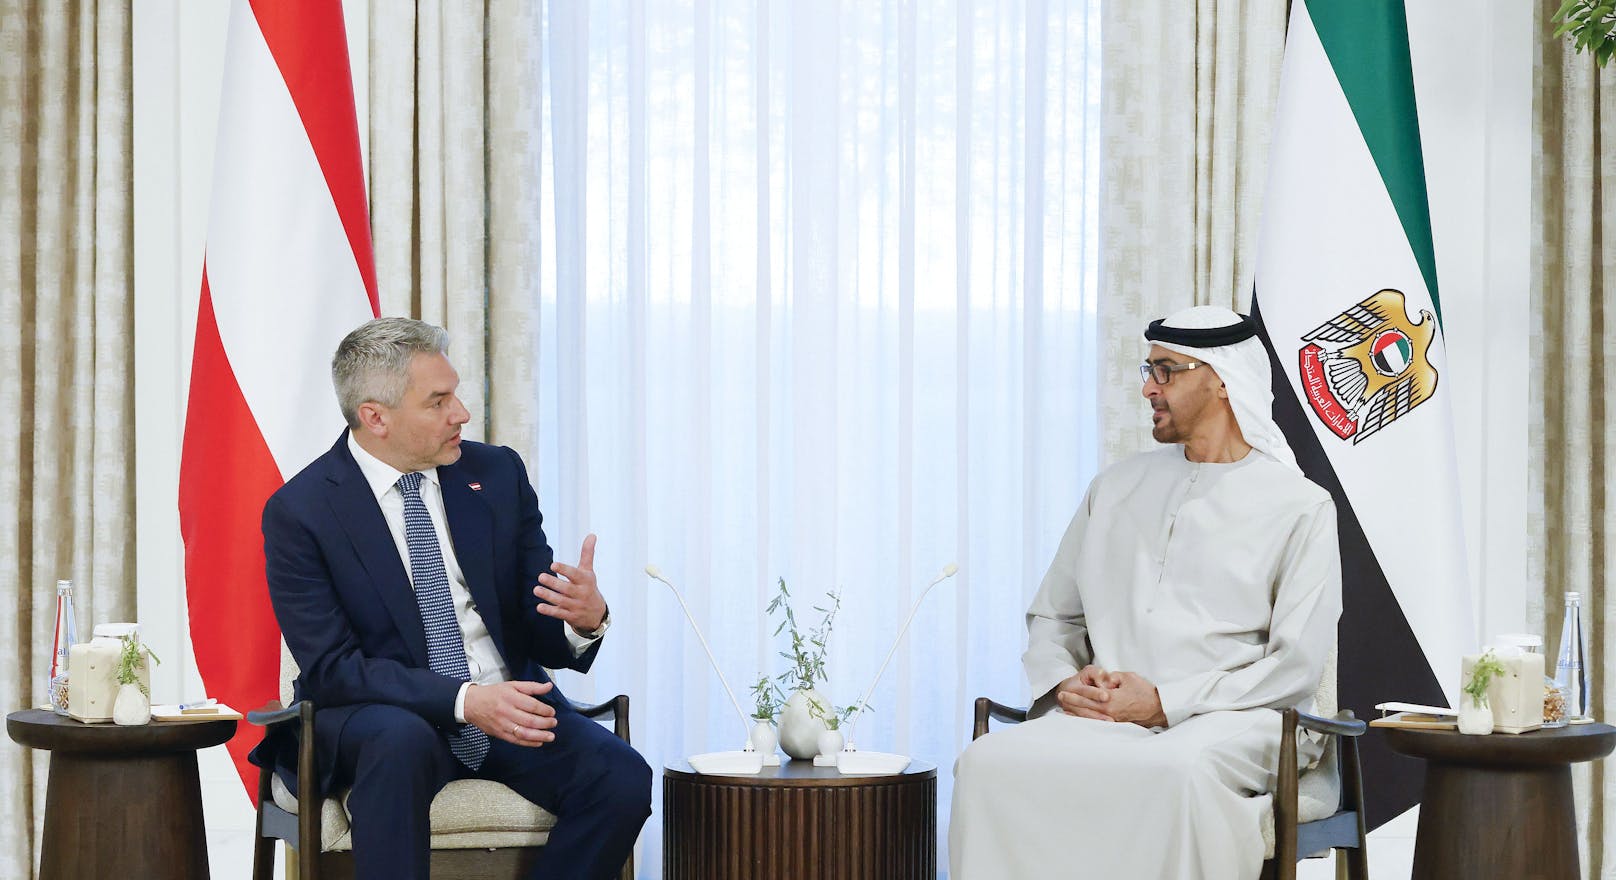 Die Vereinigten Arabischen Emirate sind ein strategischer Partner Österreichs und werden im nächsten Winter mit LNG-Lieferungen einen Beitrag zur Versorgungssicherheit leisten.